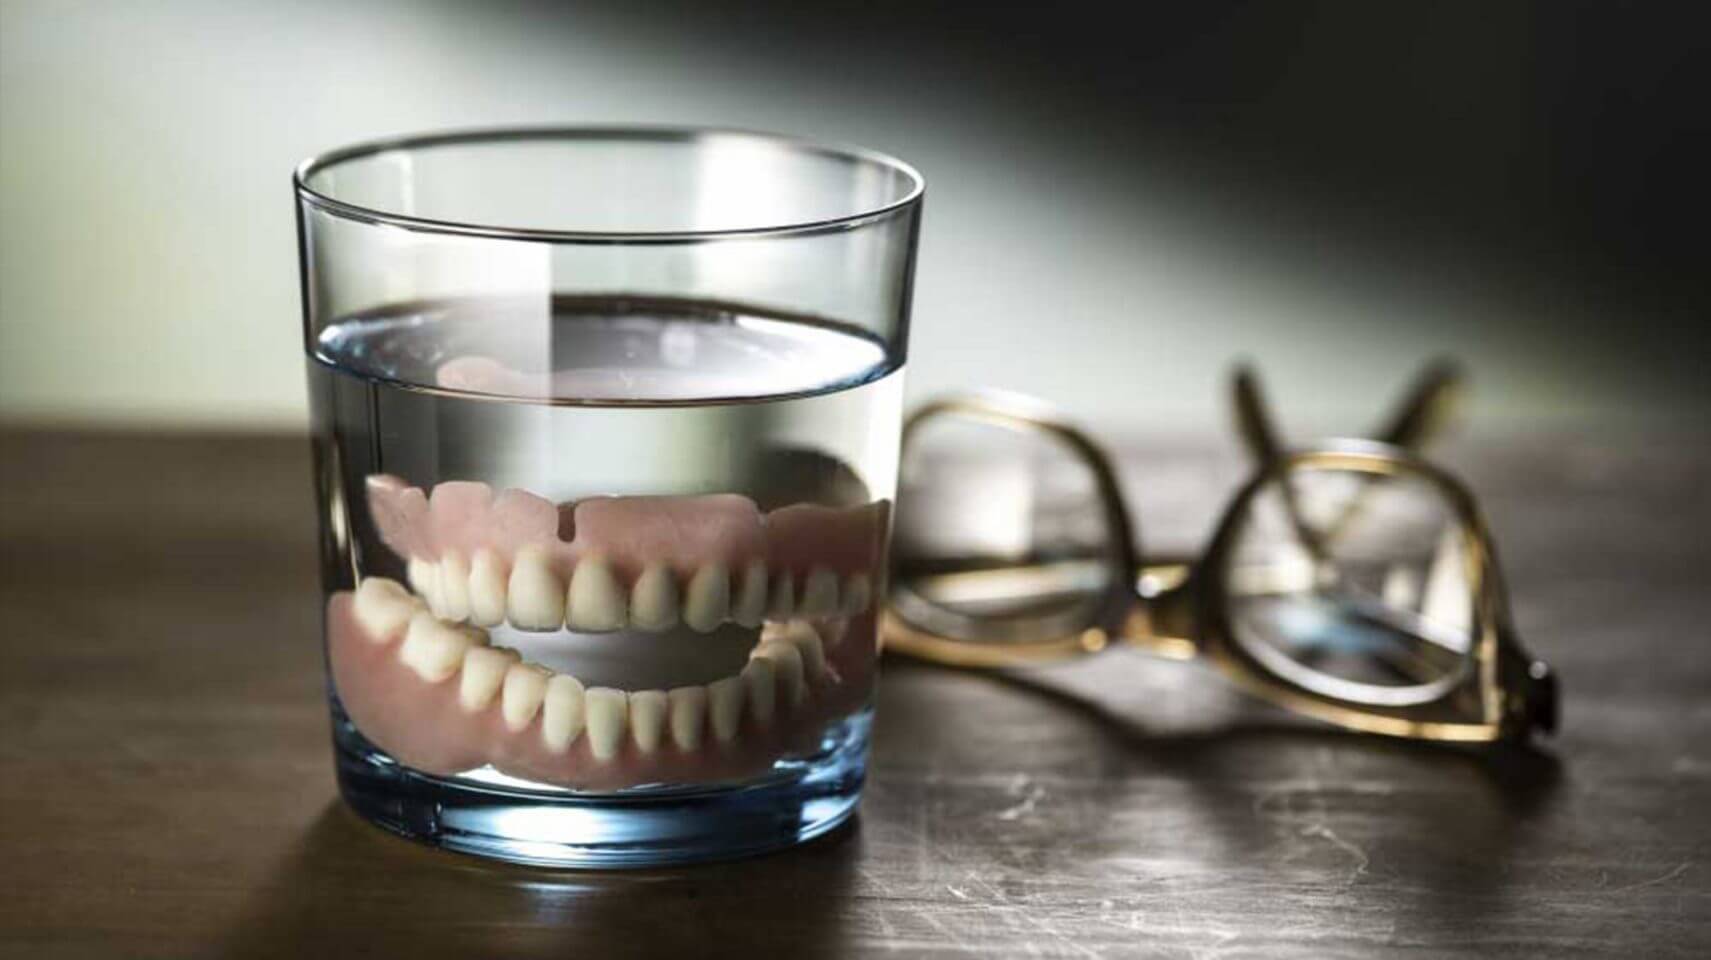 dentures in glass